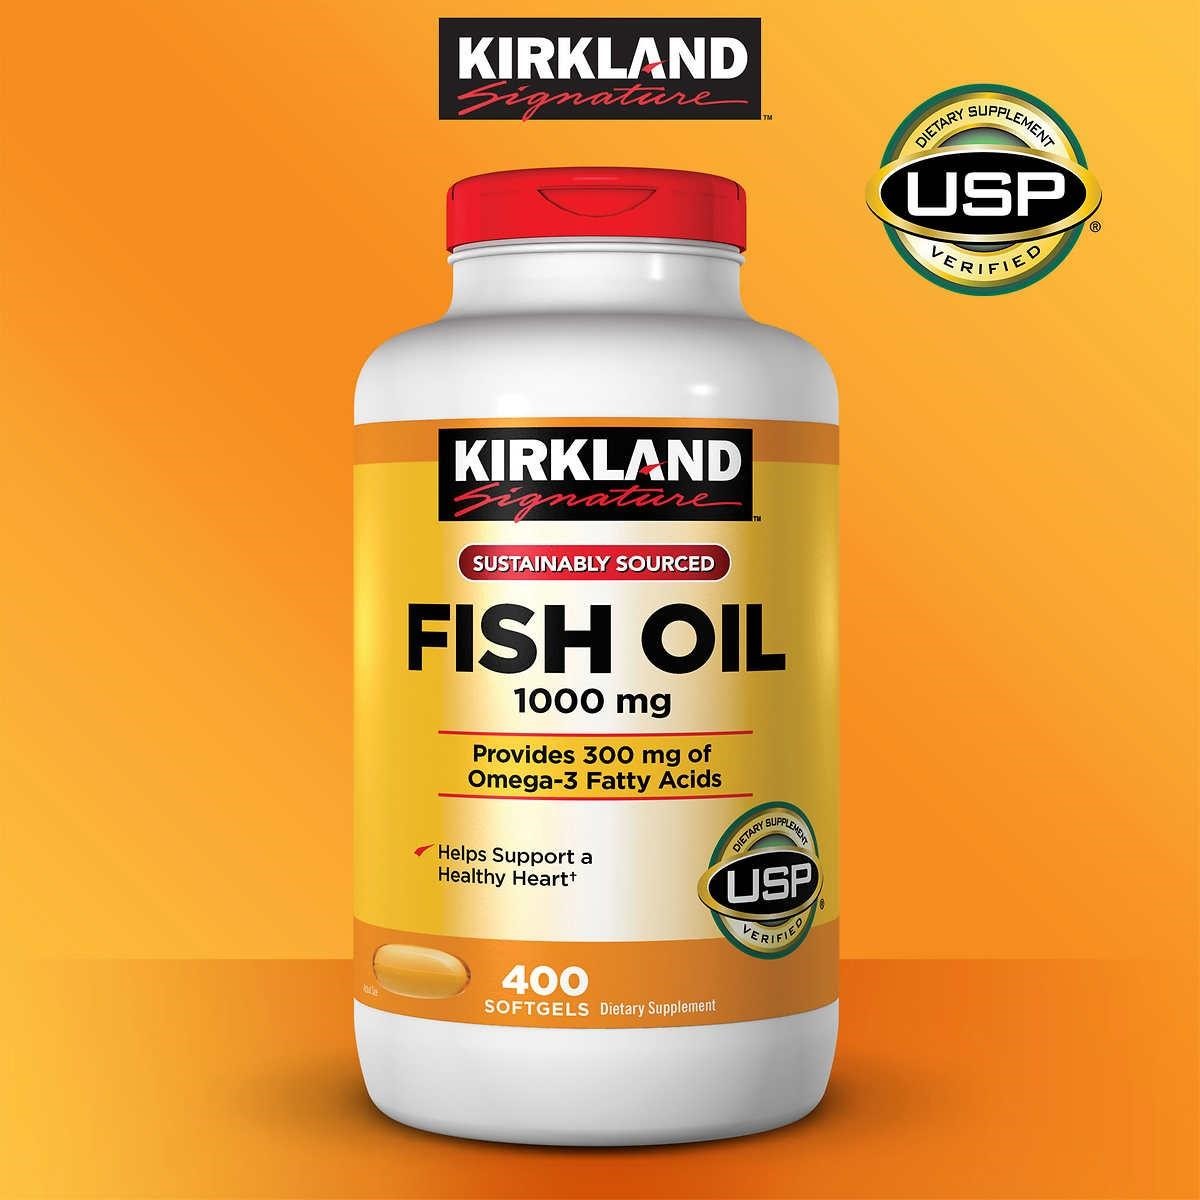 Dầu cá Kirkland Fish Oil 1000mg được bào chế từ mô của những loài cá như cá thu, cá hồi, cá ngừ, cá mòi của vùng đại dương sâu nước lạnh …